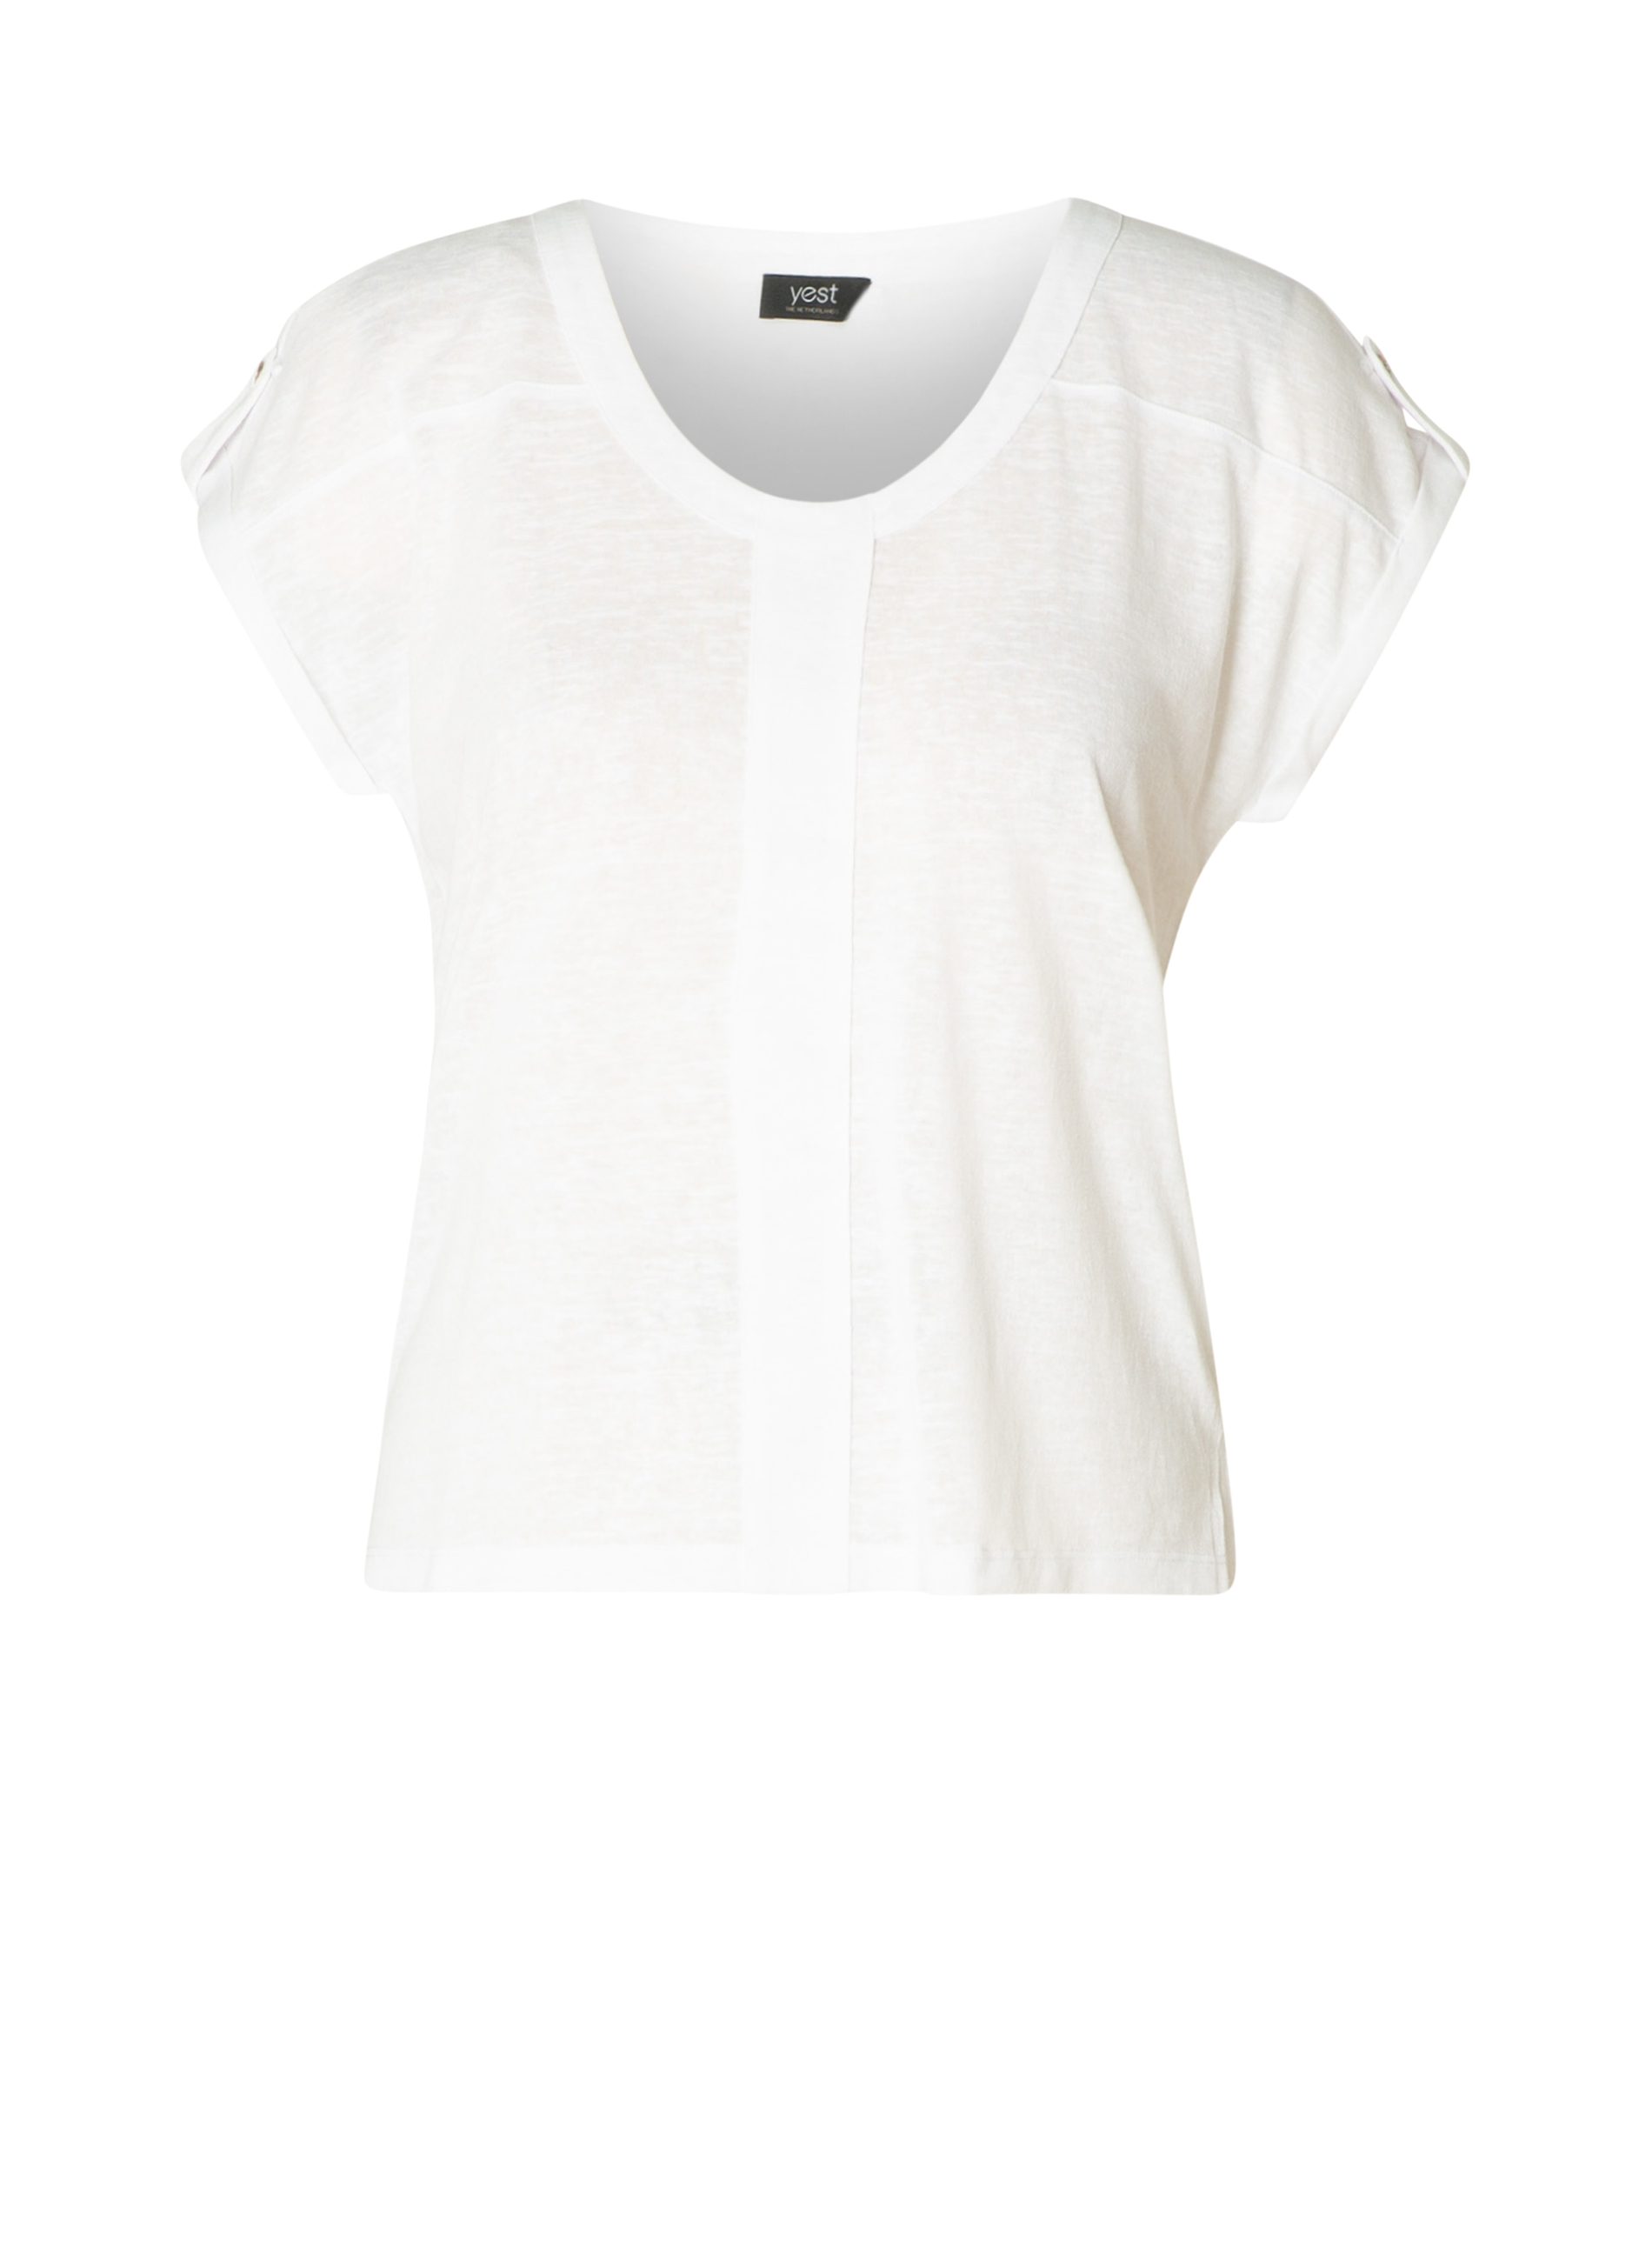 YESTA Lasheana Jersey Shirt - White - maat 1(48)